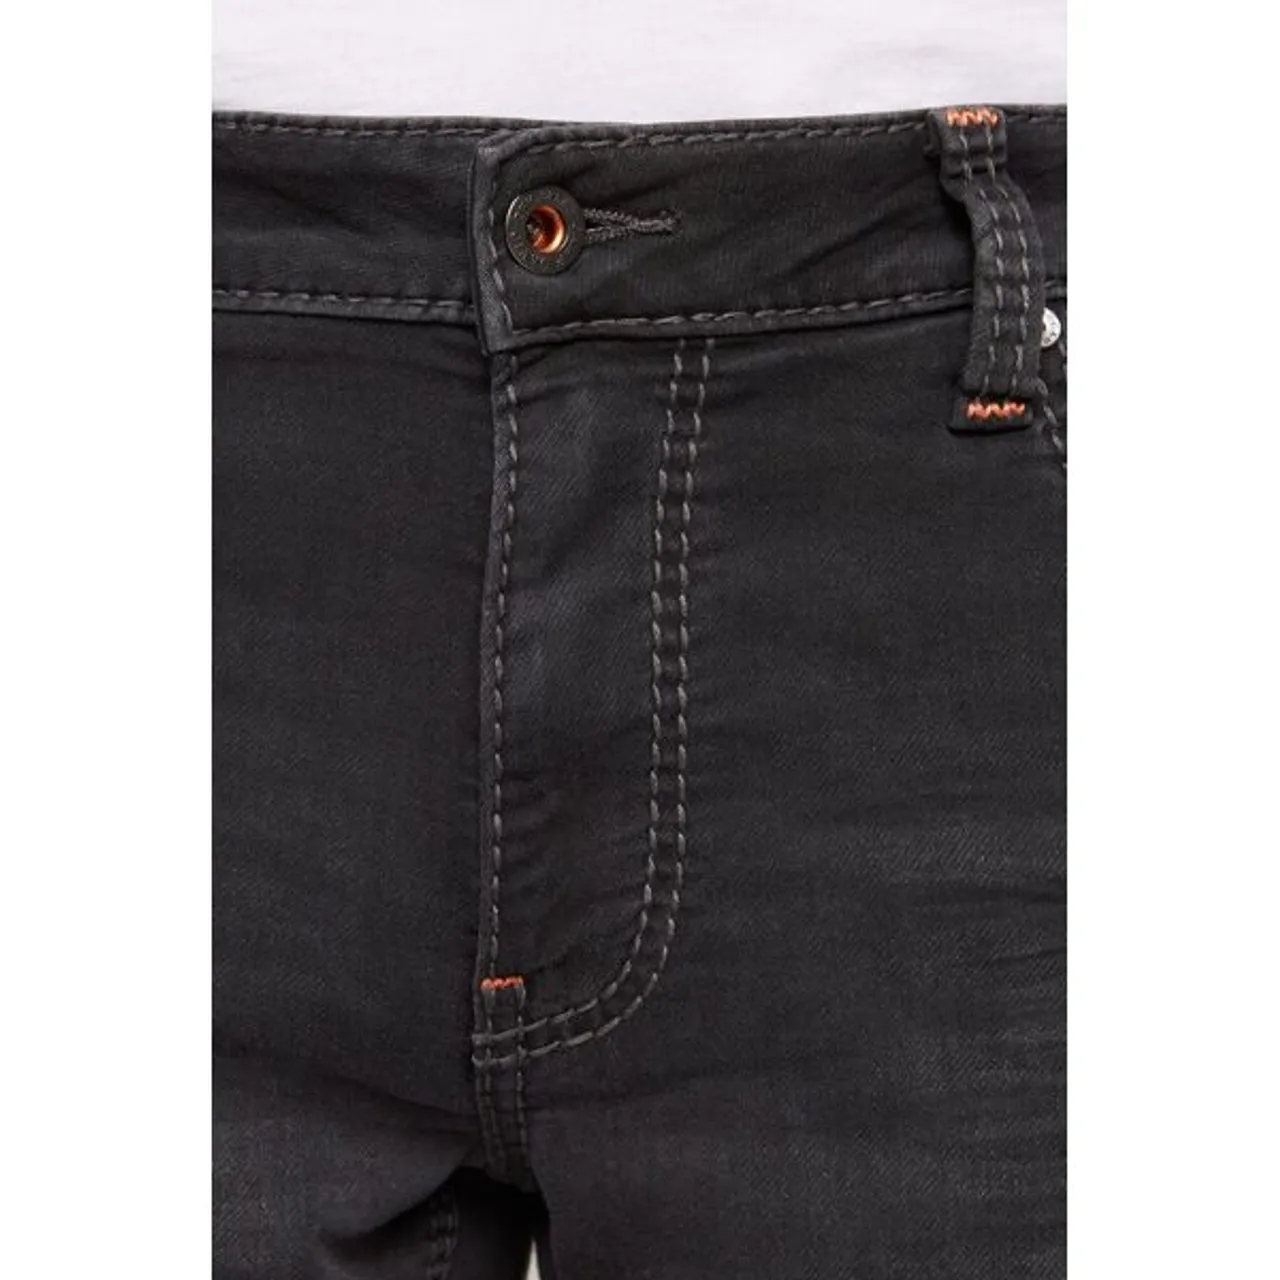 Jeansshorts CAMP DAVID Gr. 30, Normalgrößen, schwarz Herren Jeans Shorts